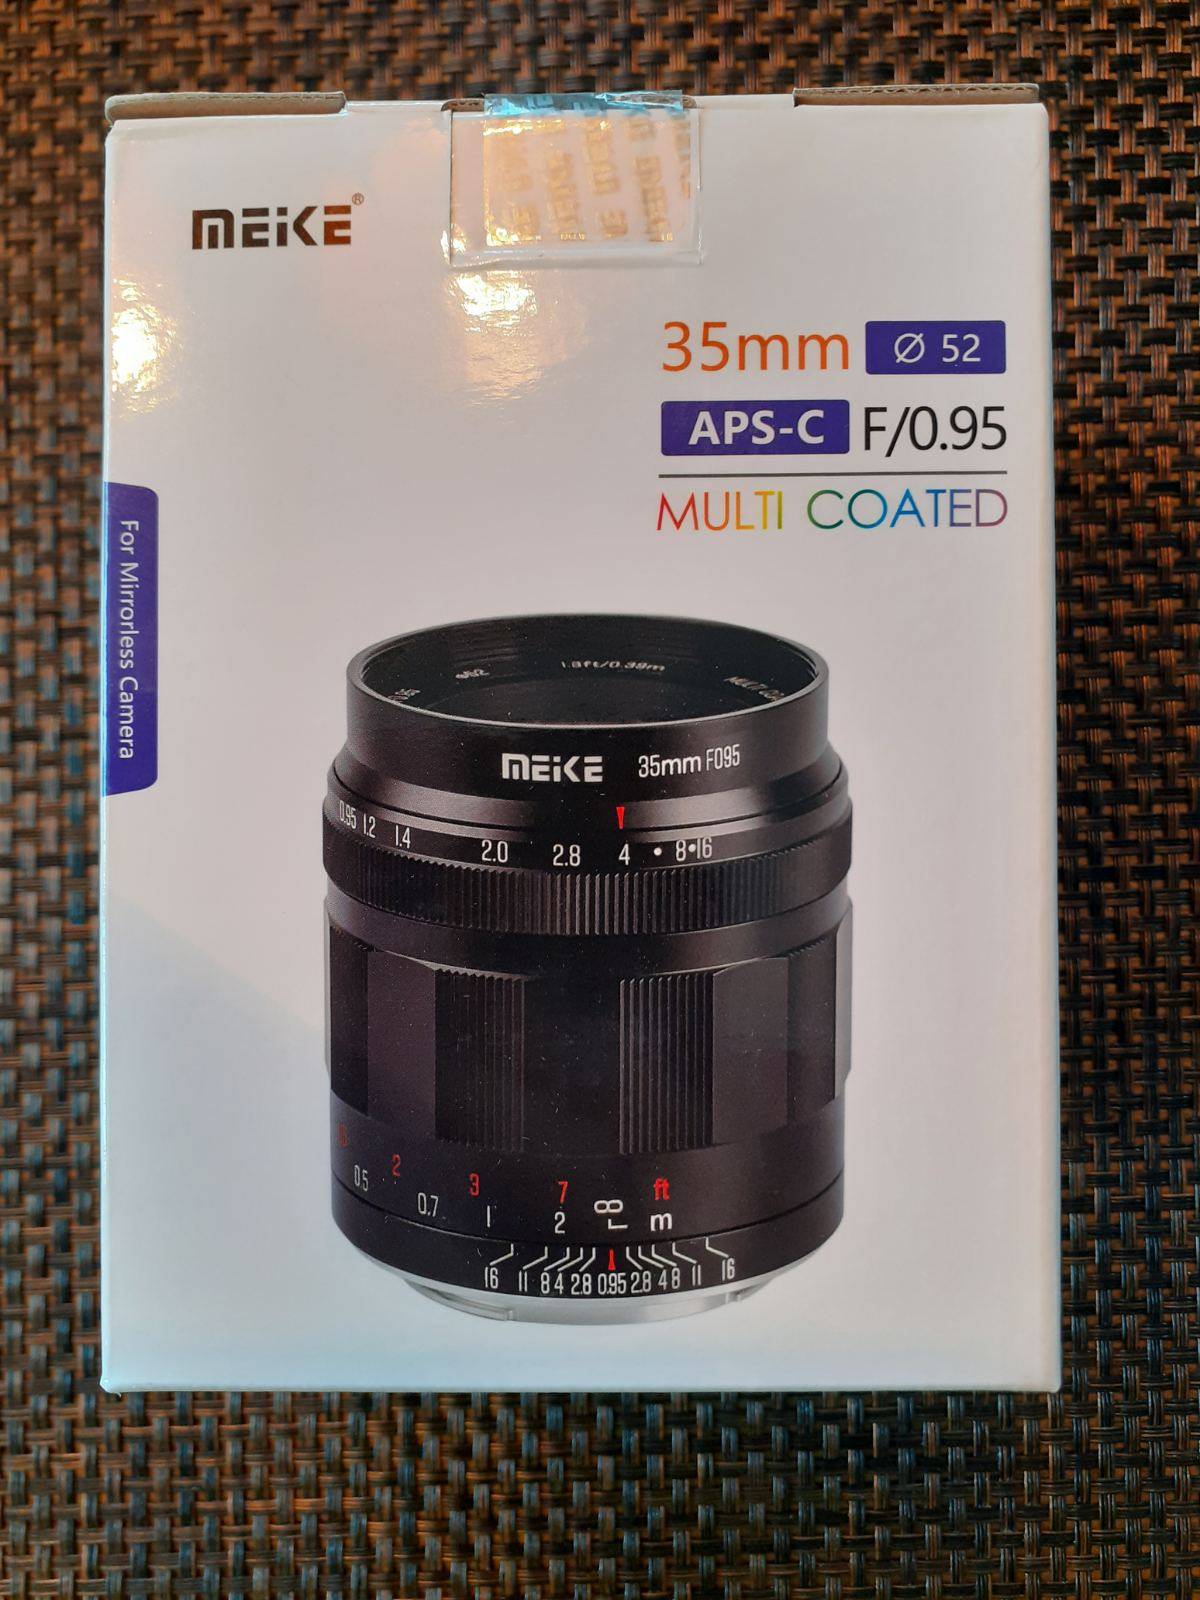 MEIKE 35 mm F0.95 multicapa (APS-C, Sony E)